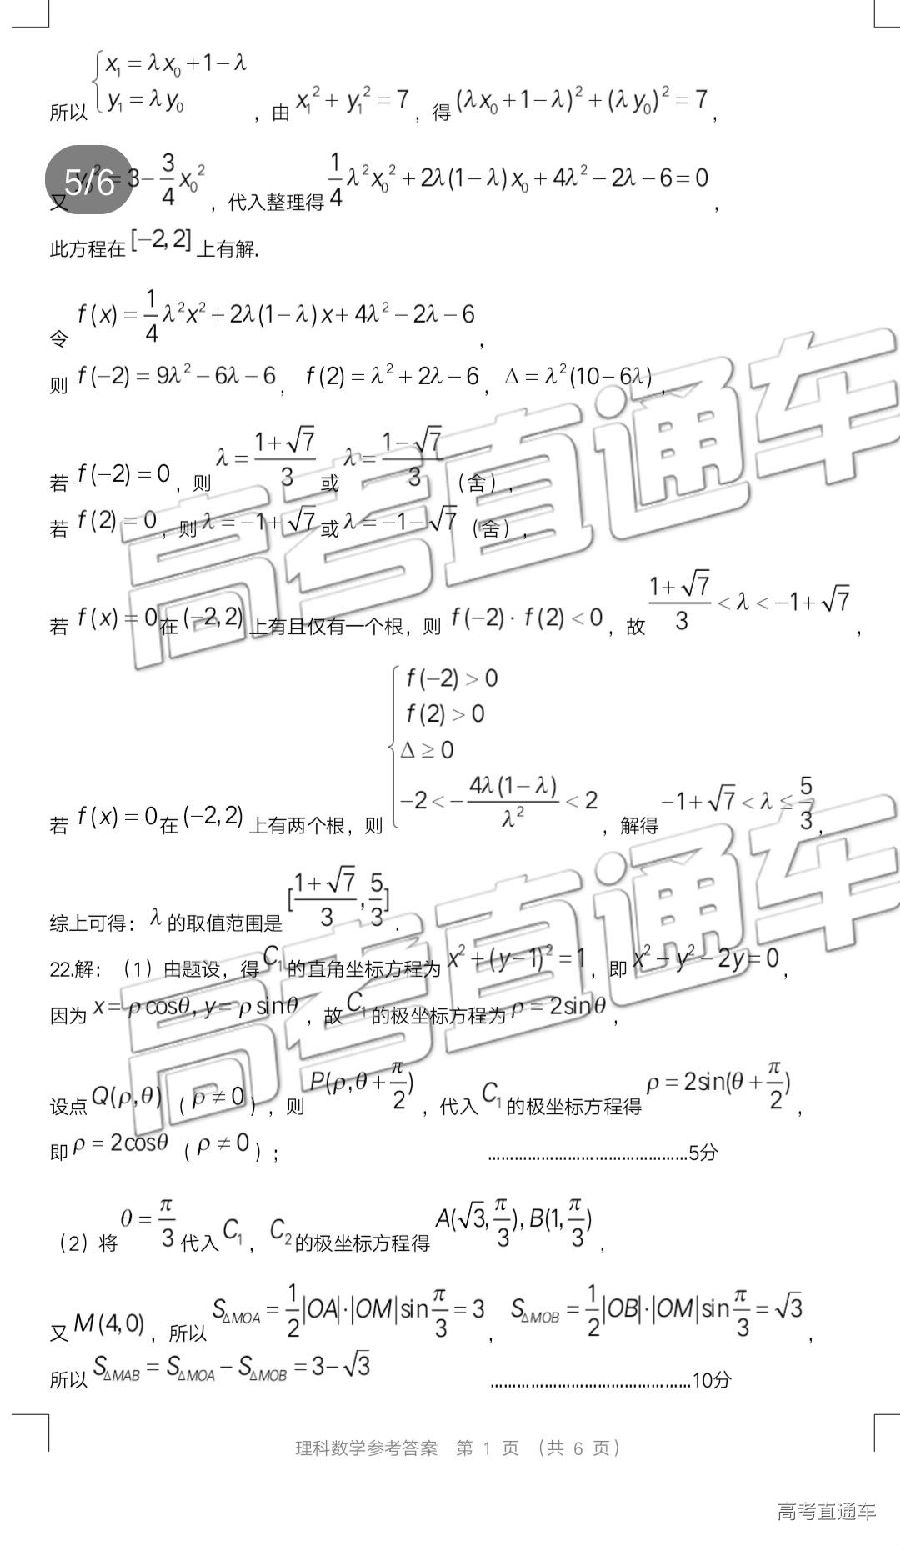 2019年5月16广东省高三高考适应性考试理科数学试题含答案